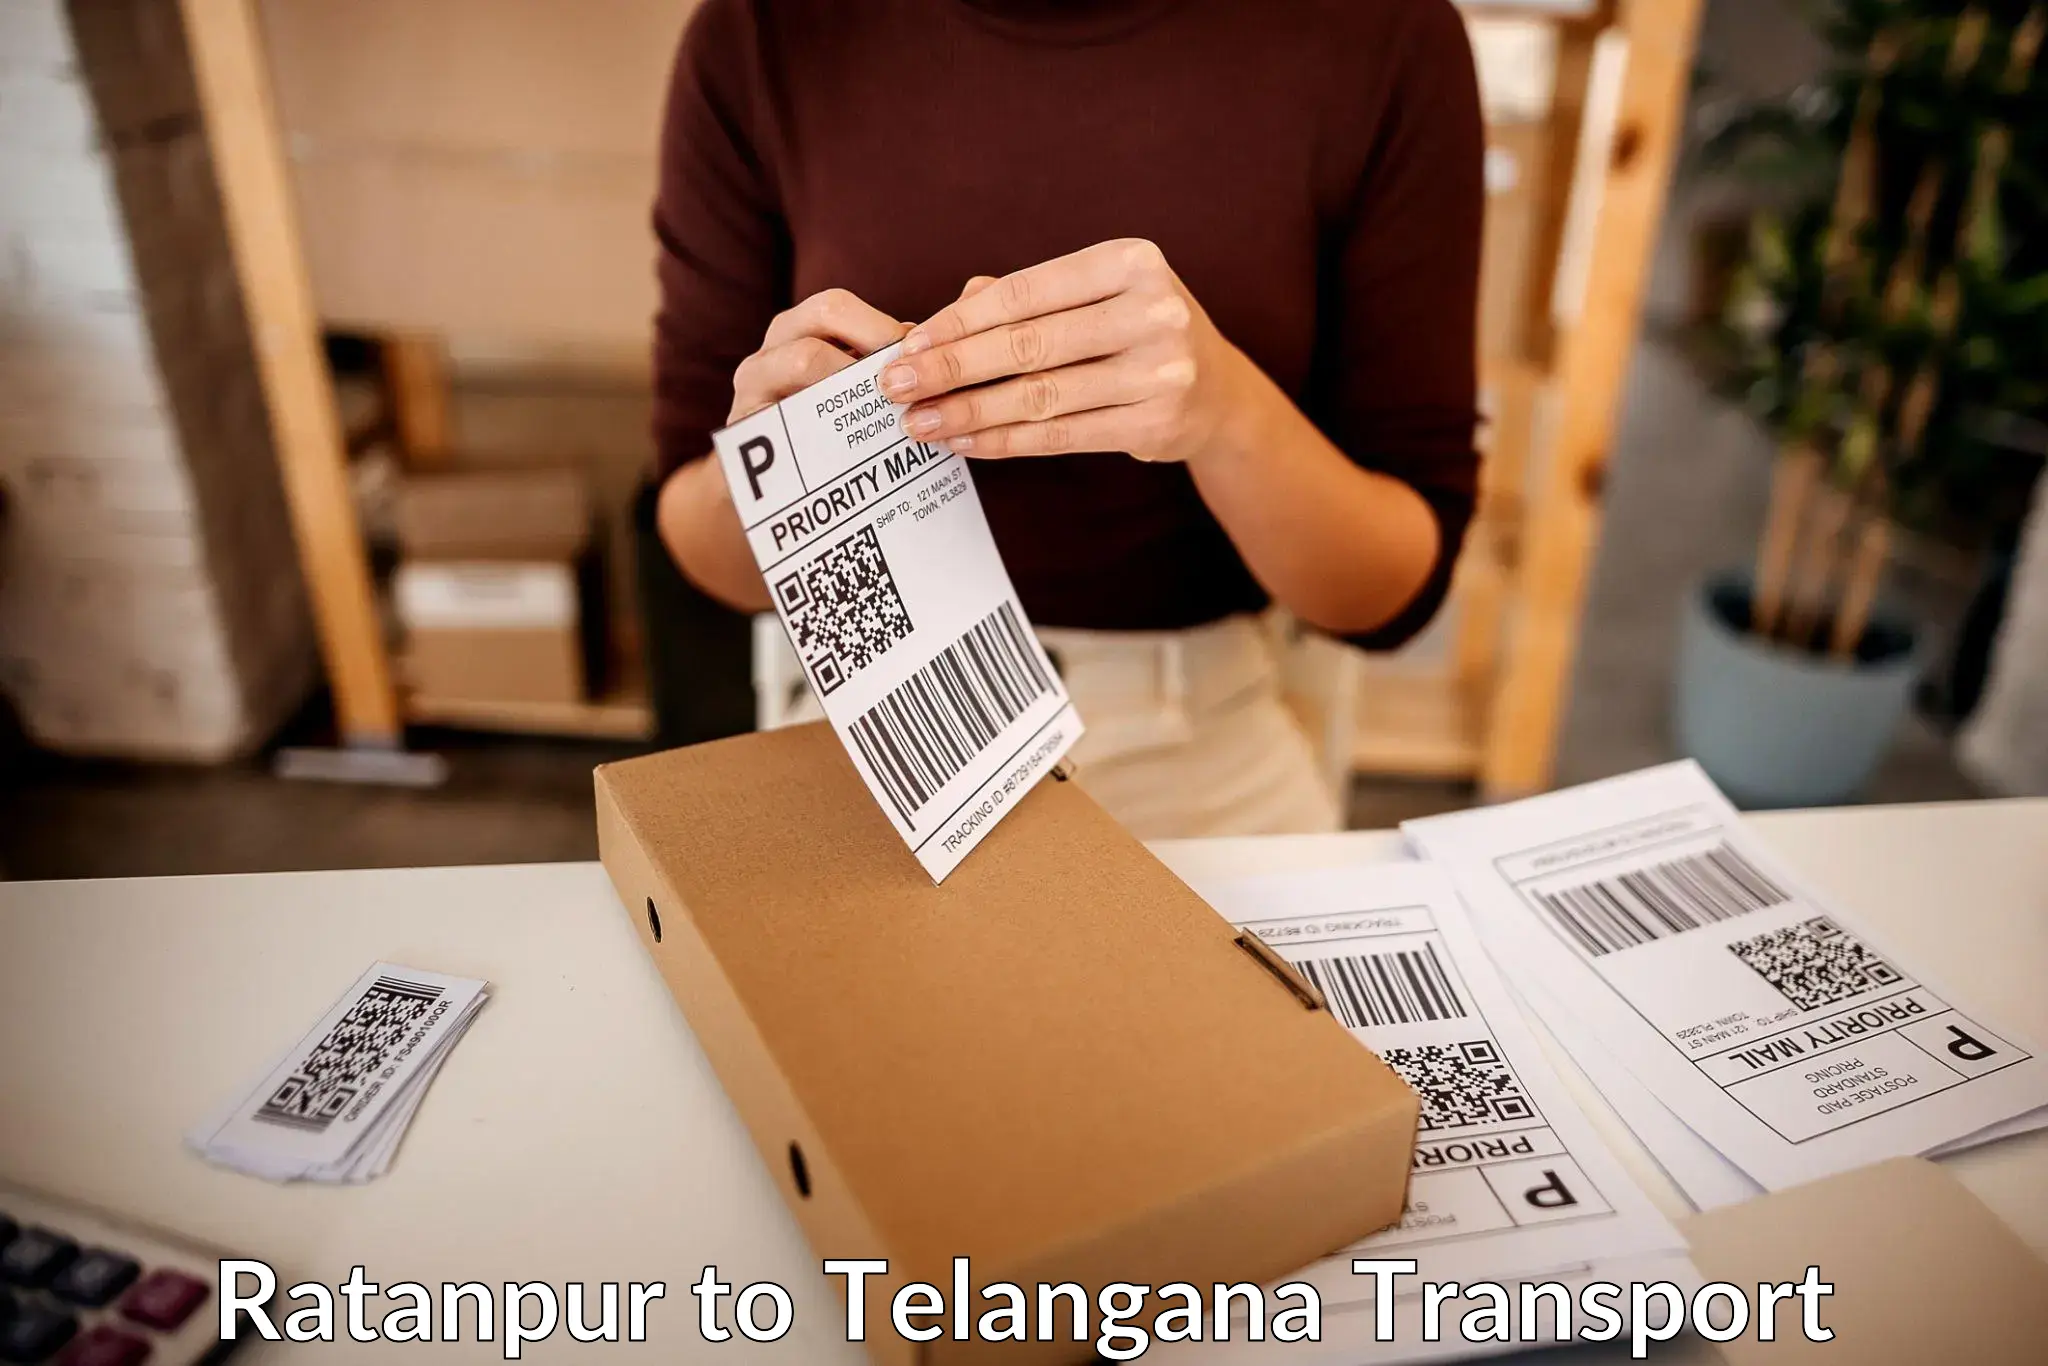 Shipping partner Ratanpur to Thungathurthi